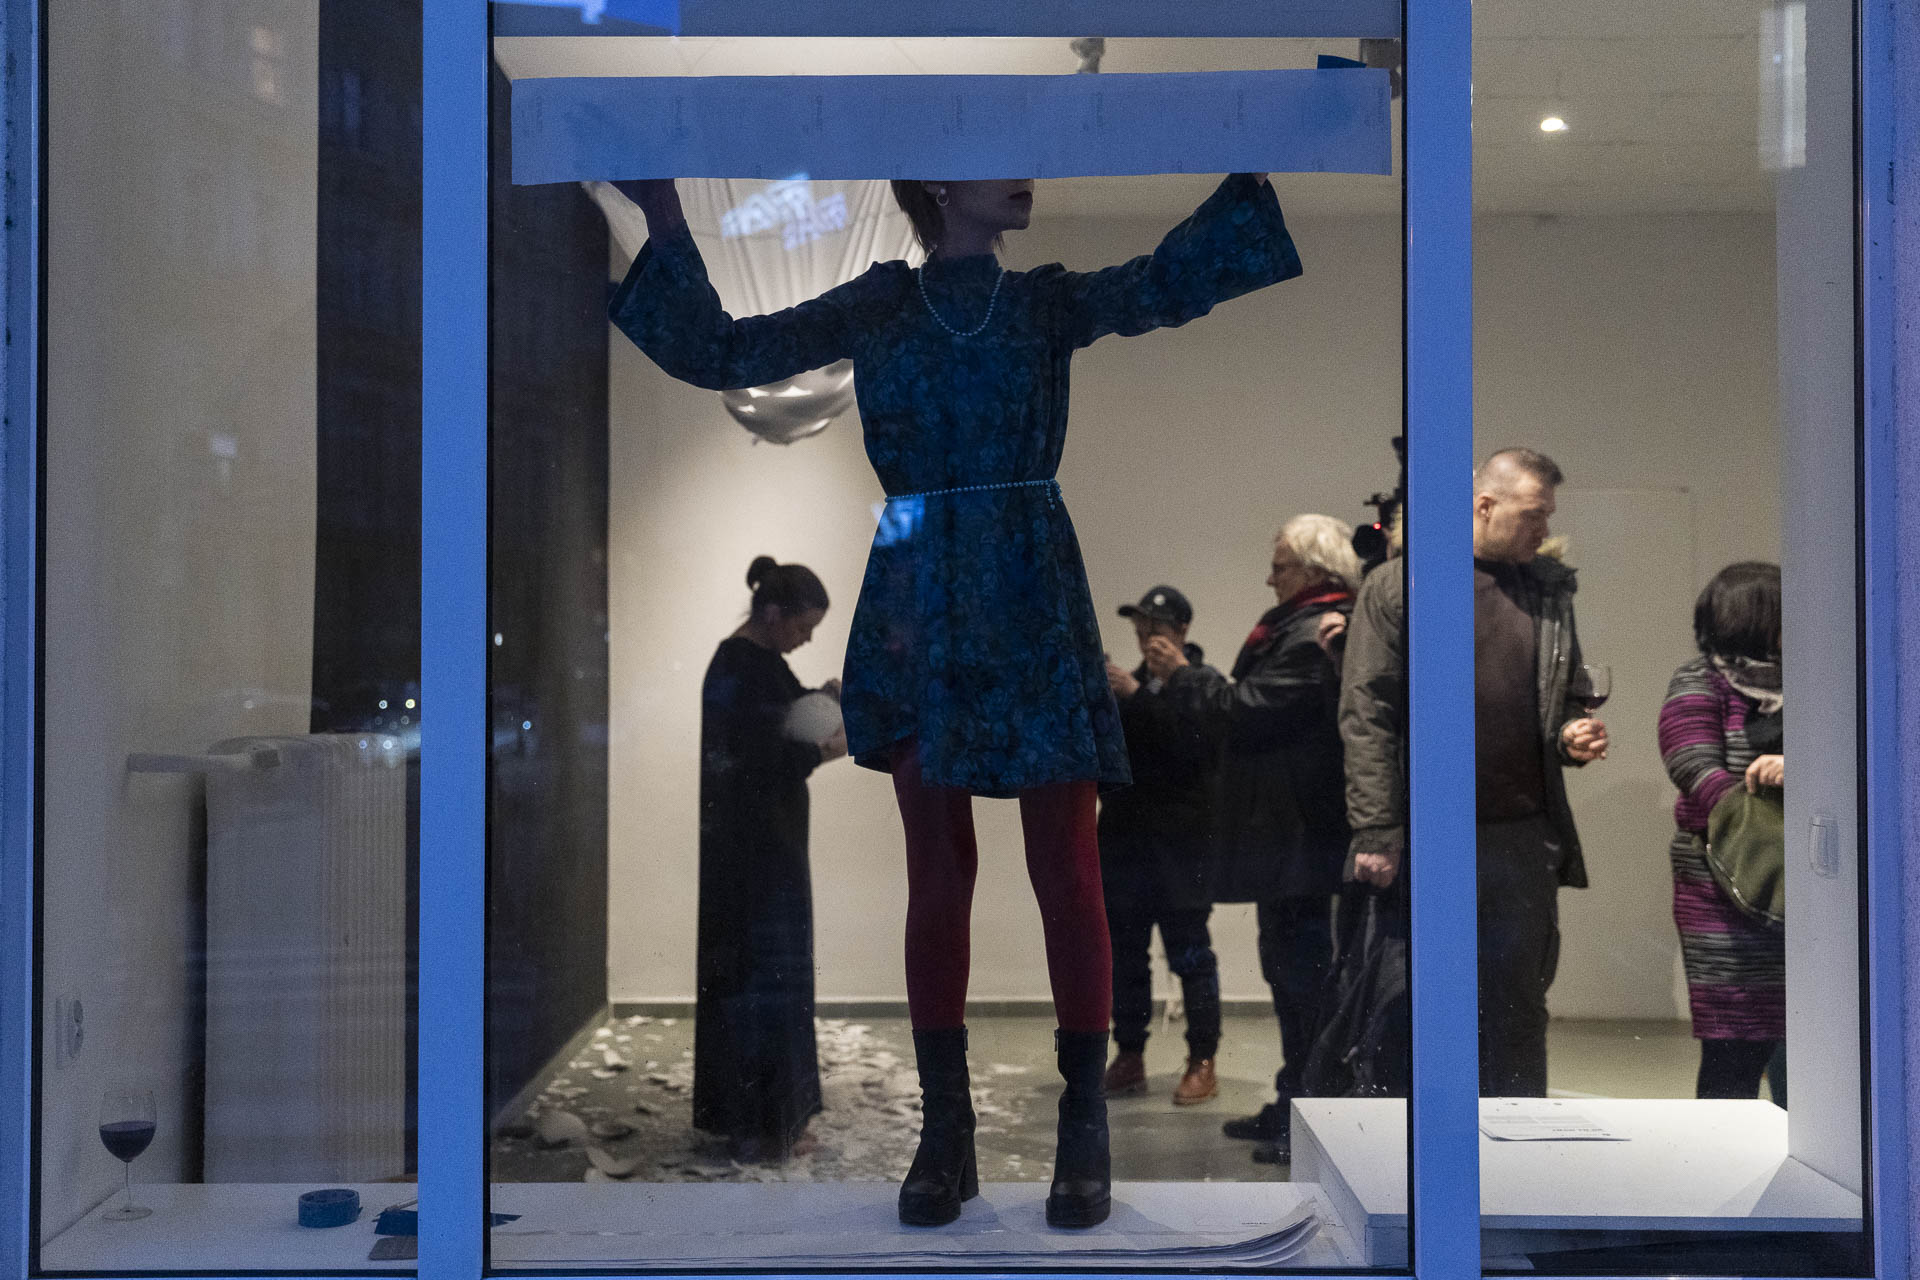 Kobieta w oknie, stojąc na parapecie, przykleja do szyby błękitno szary pas papieru na całą szerokość szyby. Za nią widoczne osoby we wnętrzu galerii.